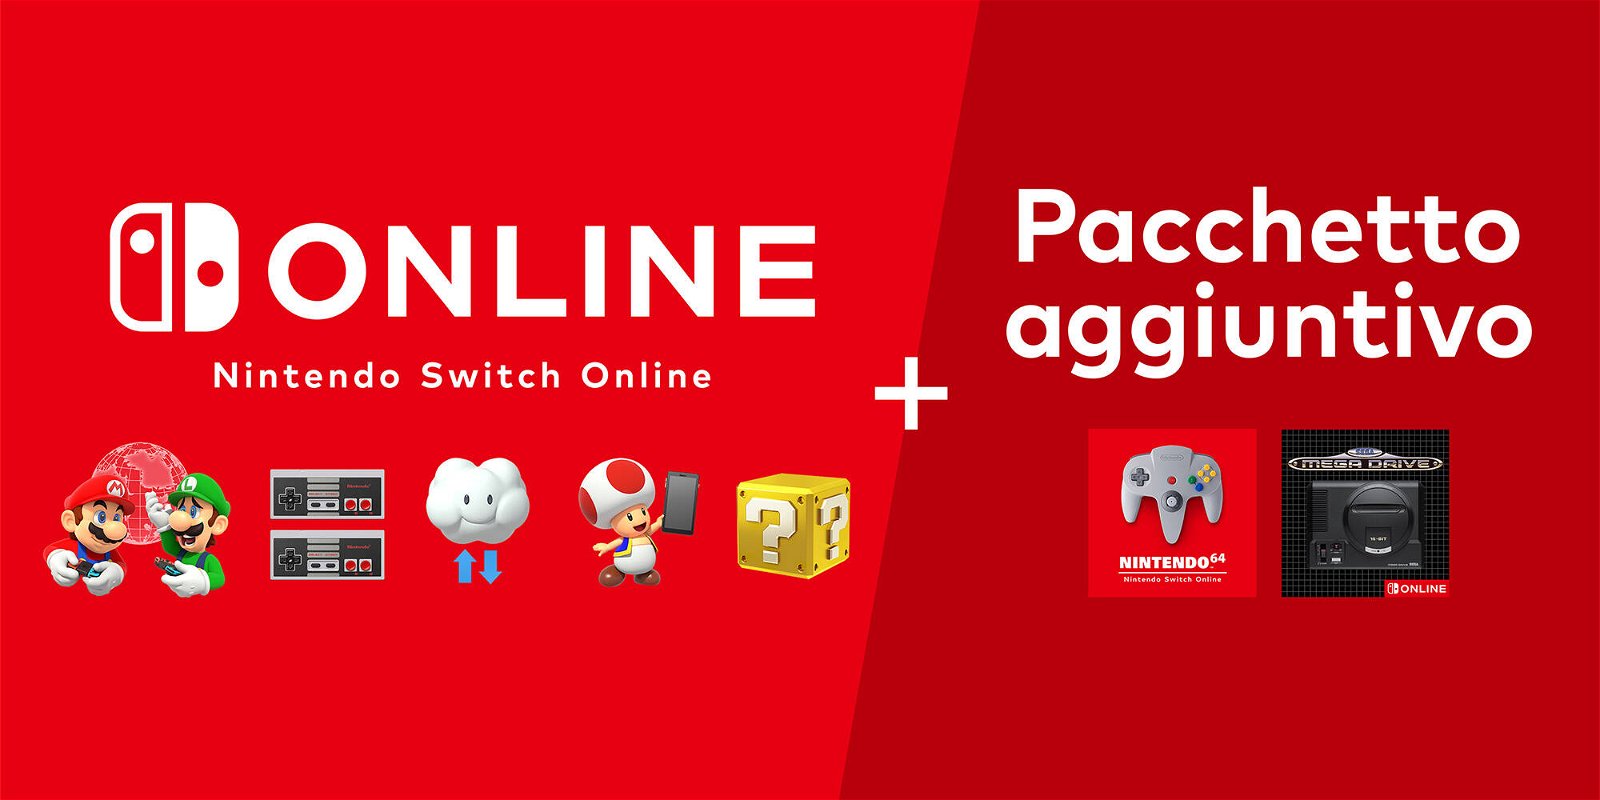 Nintendo Switch Online, nuovo gioco gratis in arrivo sul Pacchetto Aggiuntivo